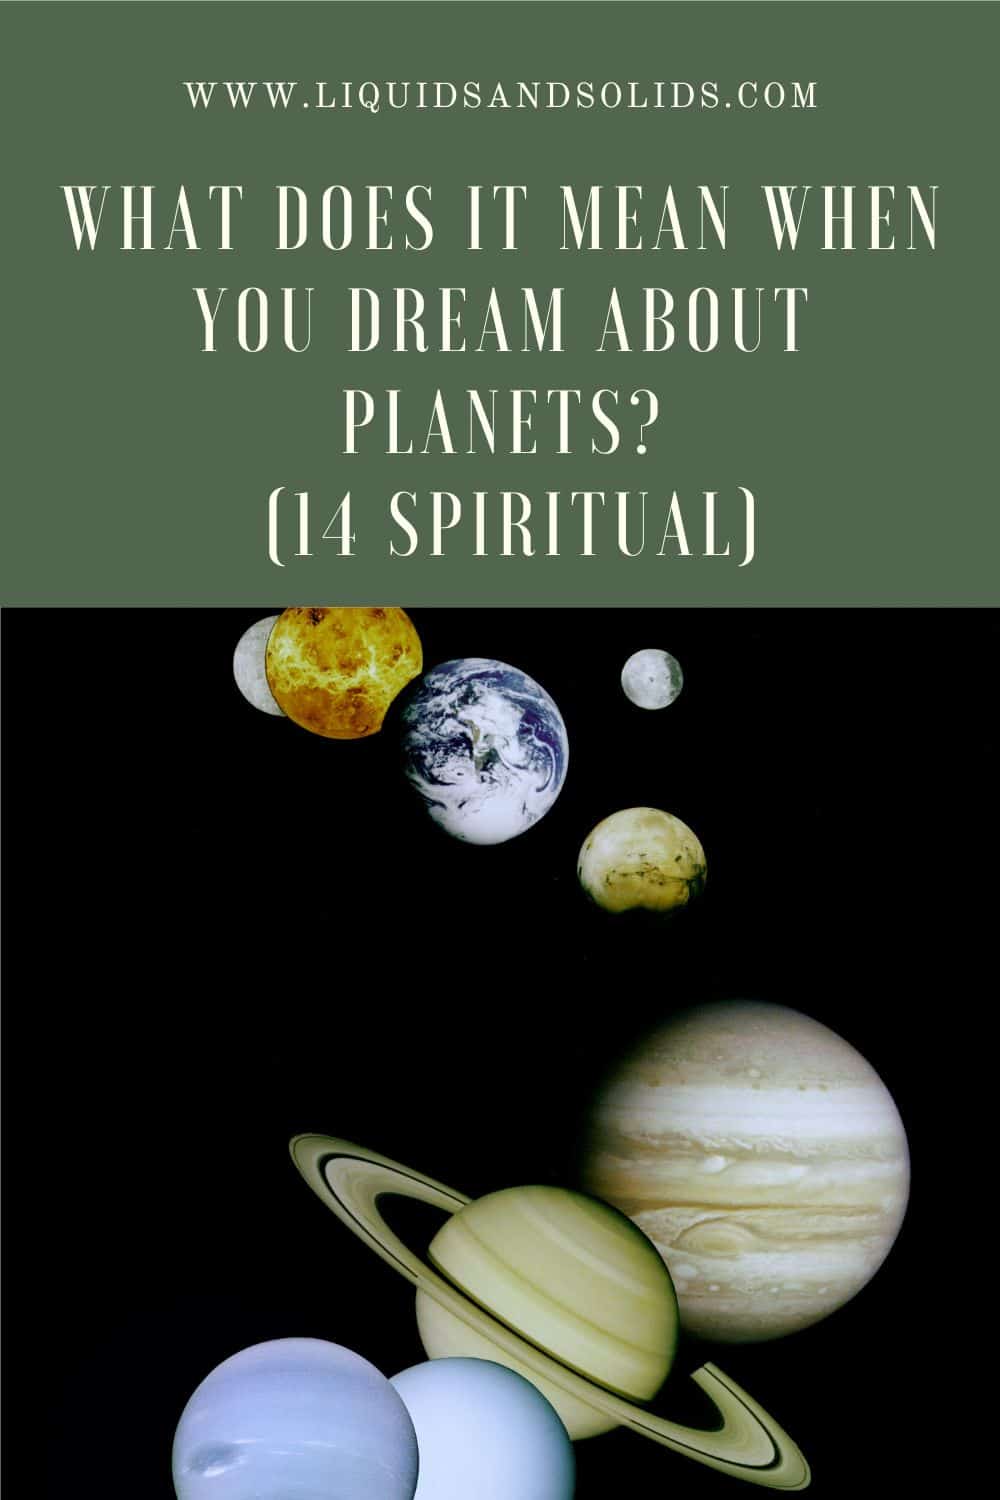  Unenägu planeetidest? (14 vaimset tähendust)